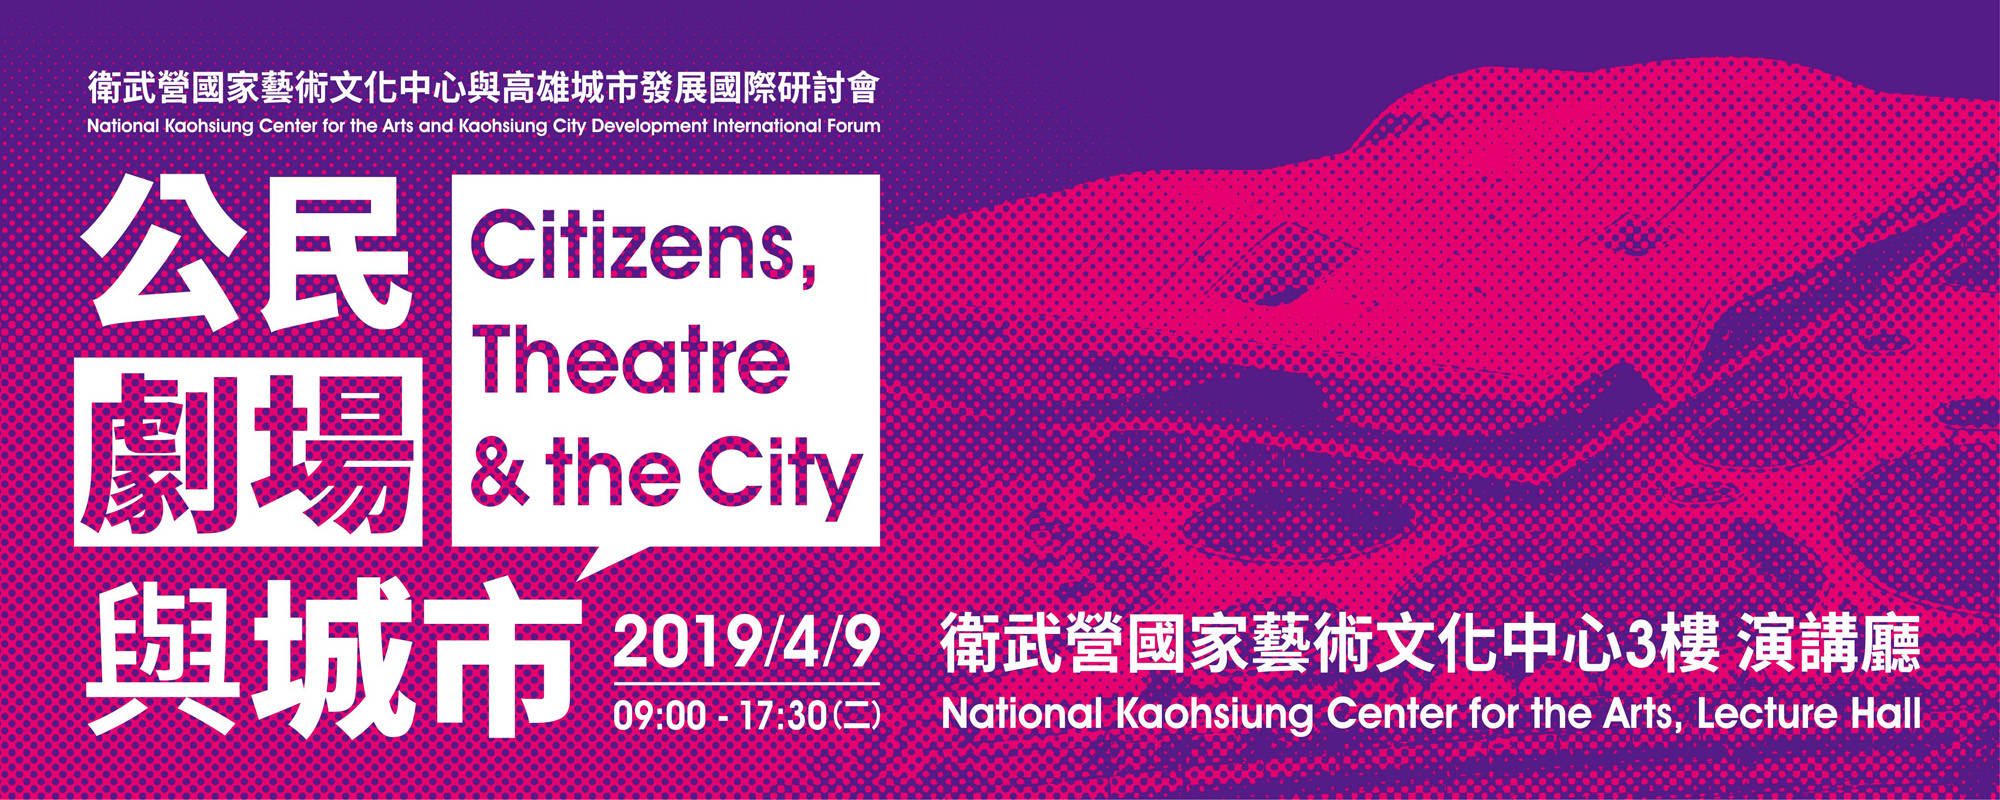 公民、劇場與城市──衛武營國家藝術文化中心與高雄城市發展國際研討會